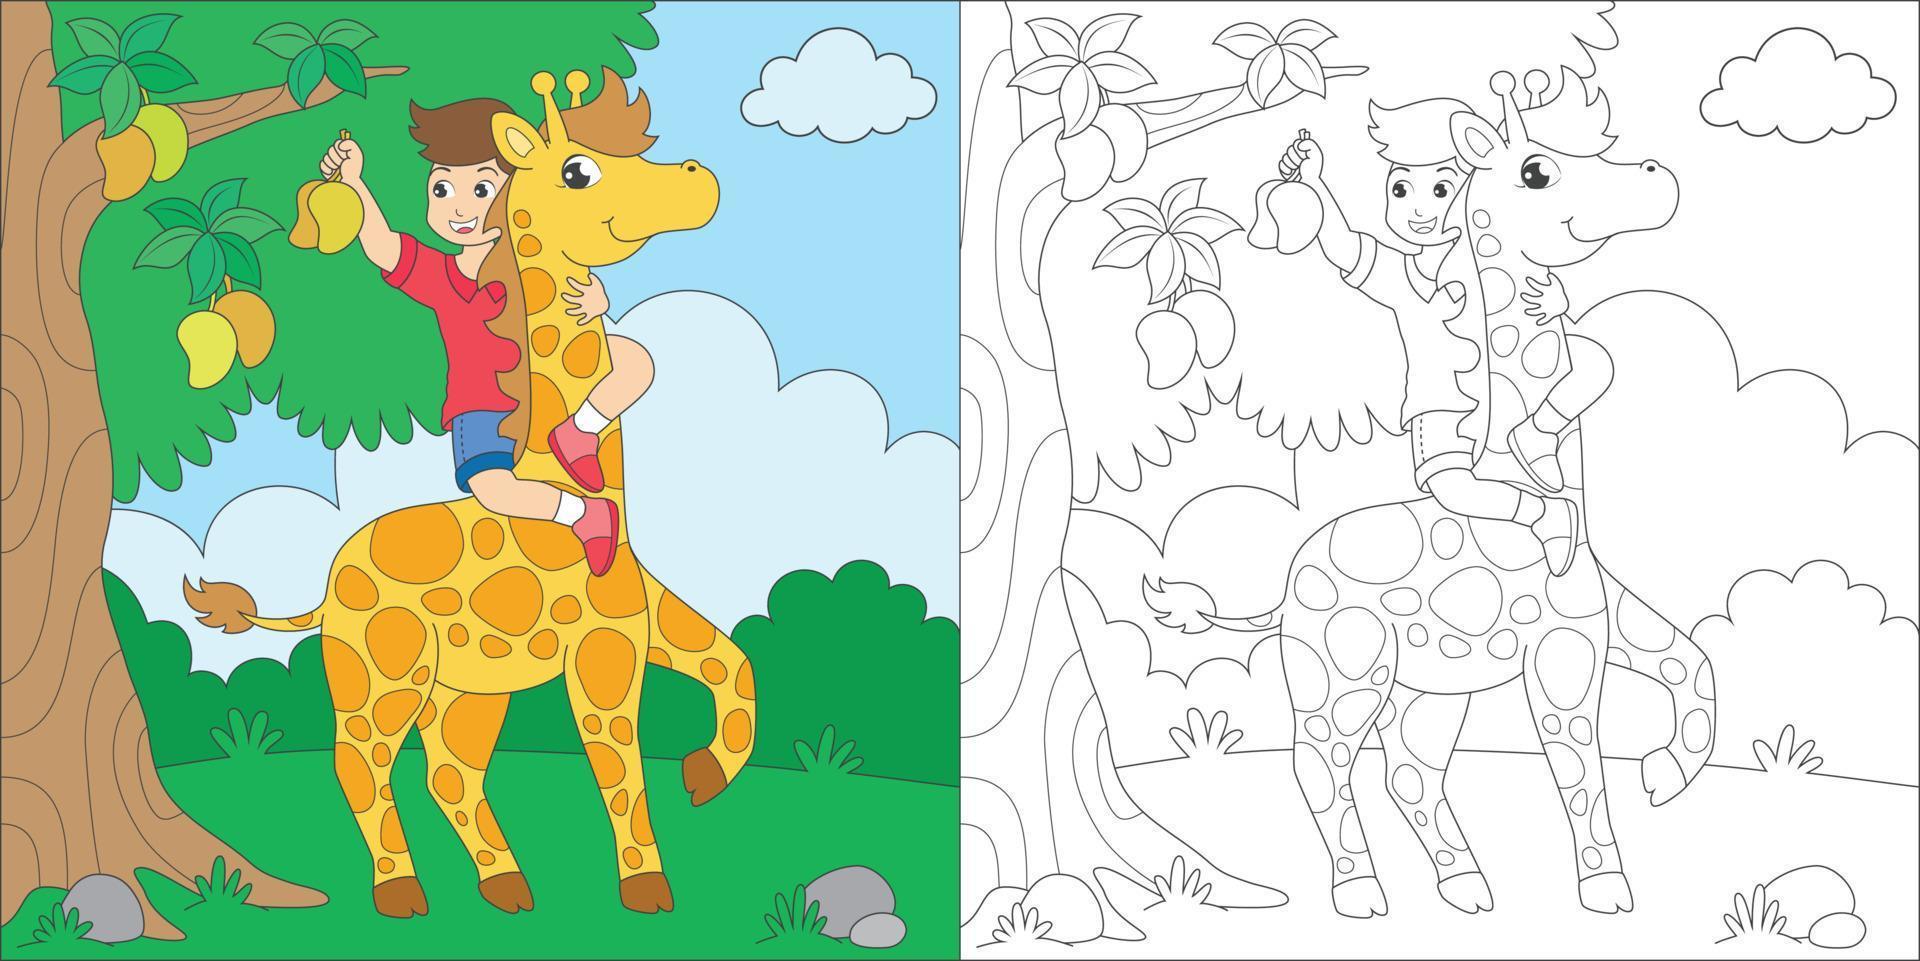 ragazzo da colorare e giraffa vettore